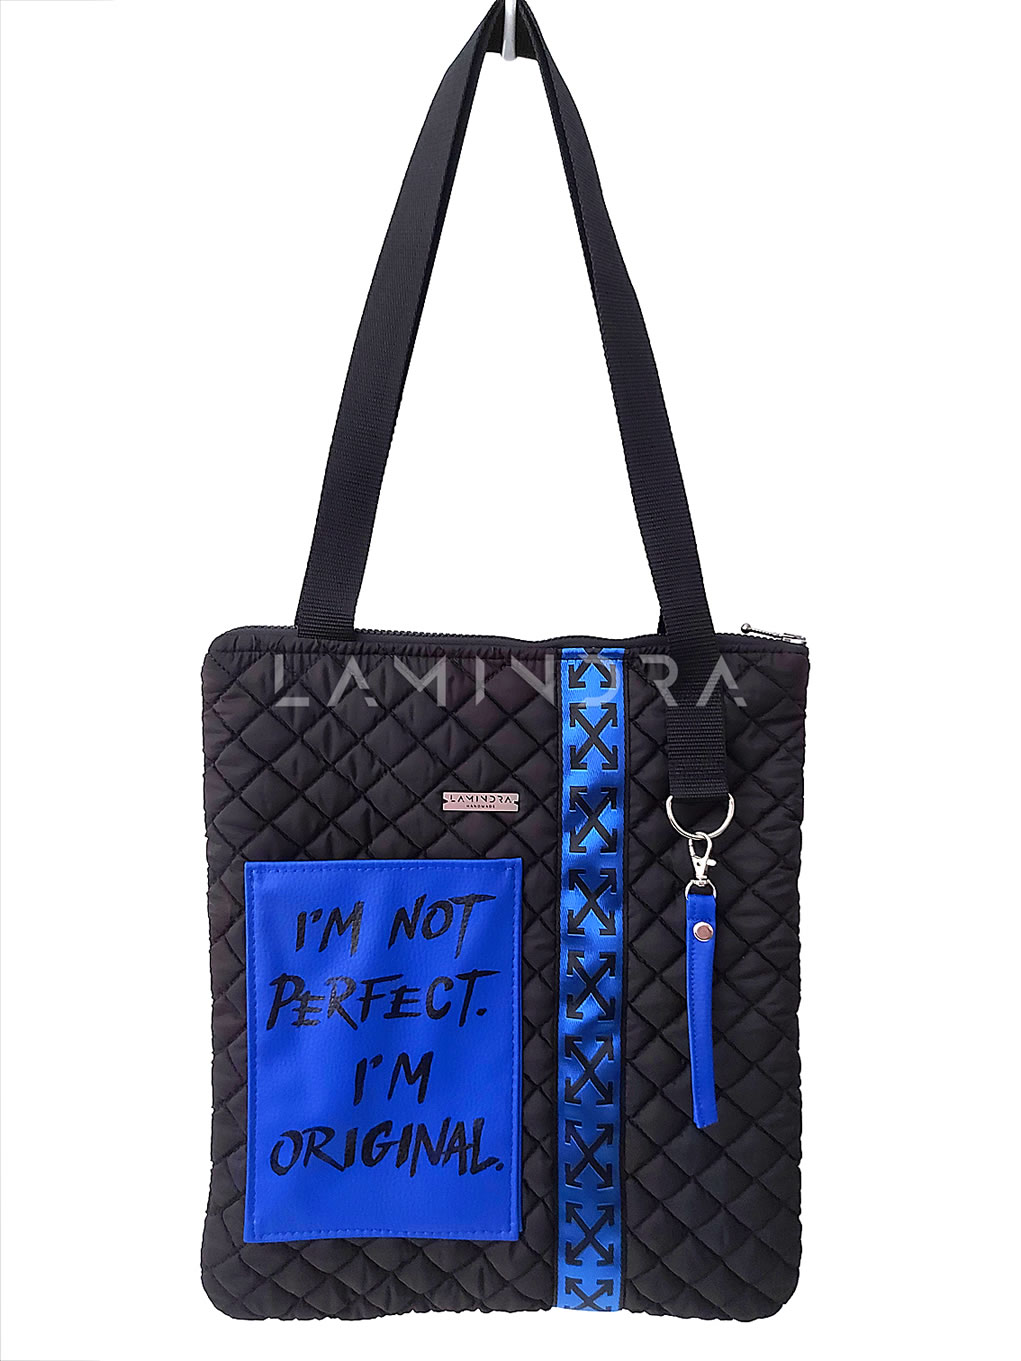 Táskák, hátizsákok, kézműves termékek: TA021, Tote Bag - I'M ORIGINAL - Vízlepergetős táska